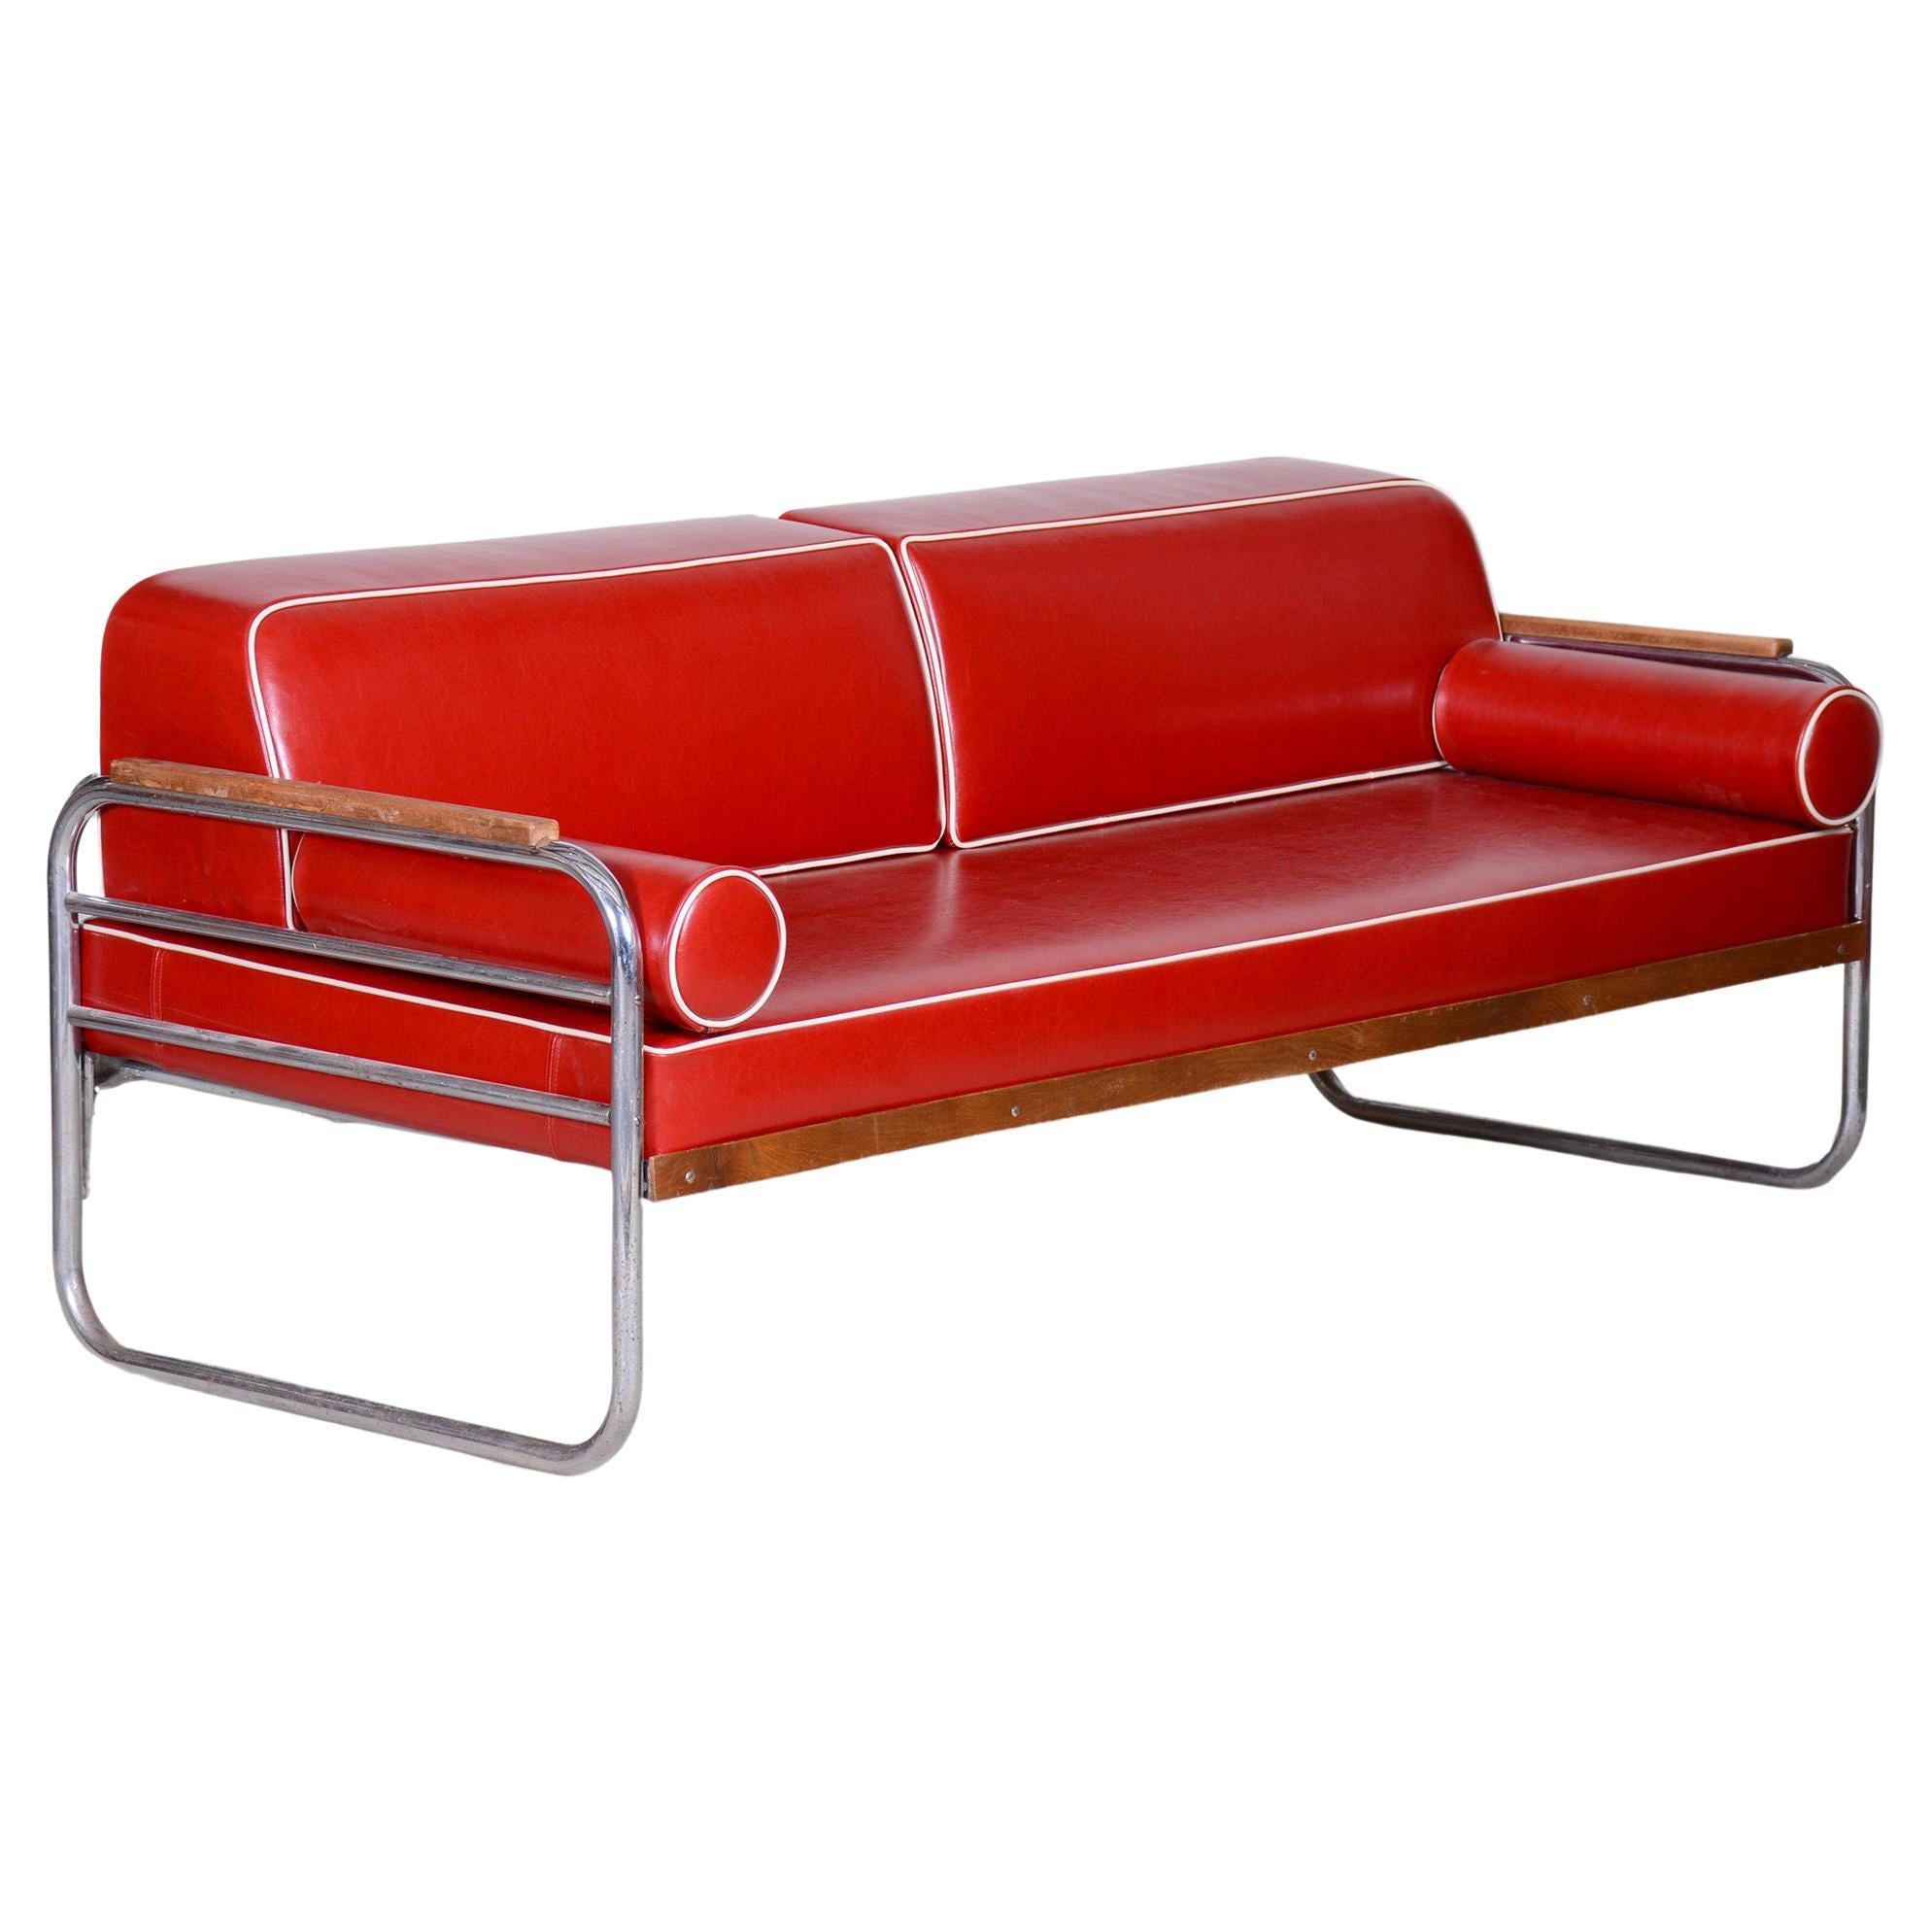 Rotes Bauhaus-Sofa aus hochwertigem Leder von Thonet, Chrom, vollständig restauriert, 1930er Jahre